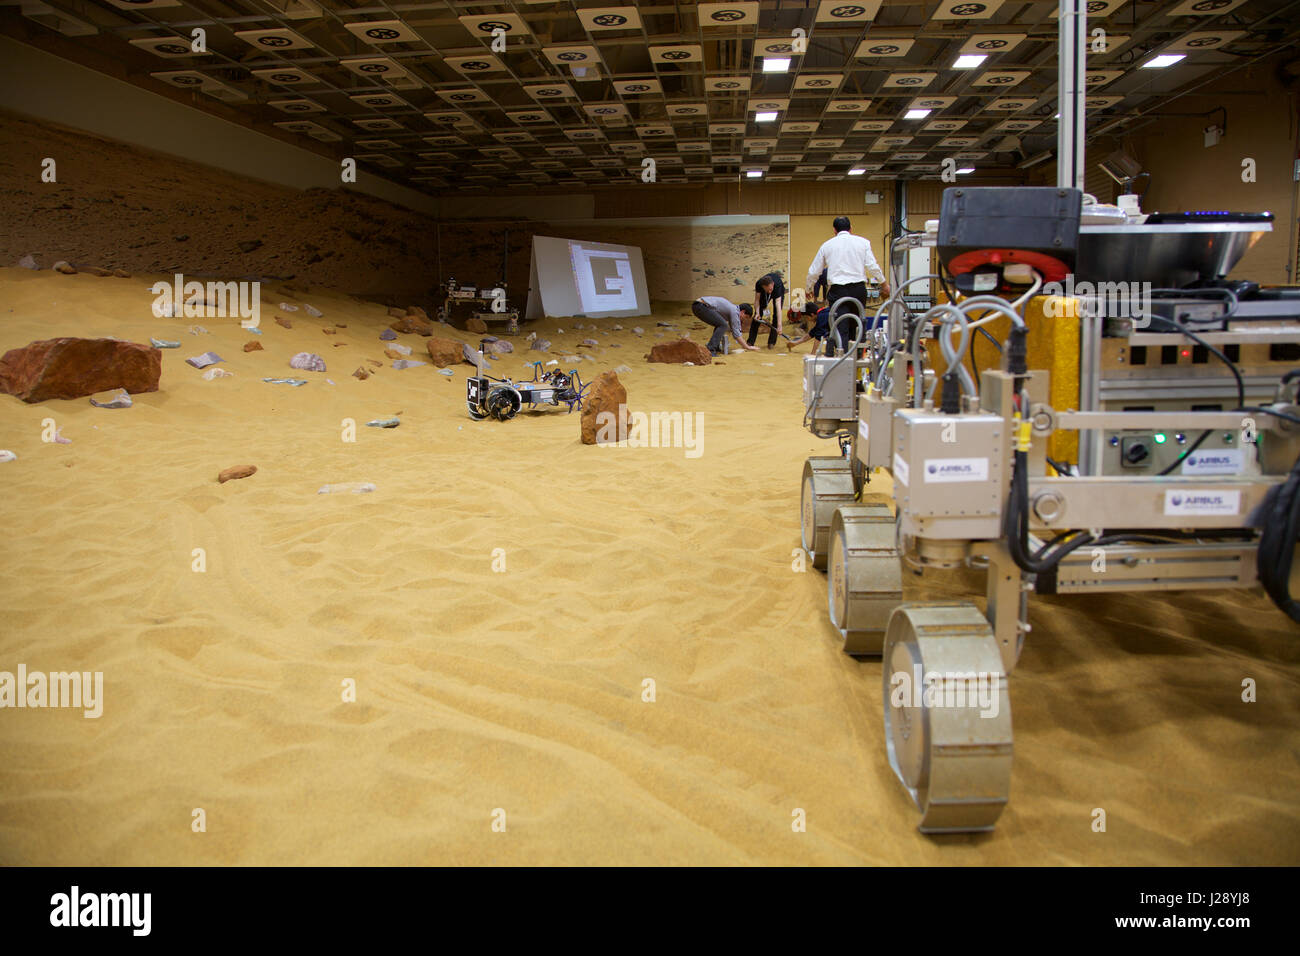 Eine kleine Scout-Prototypen für die ESA ExoMars Rover-Mission zum Mars wird von Airbus in einer Lagerhalle gemacht, um den roten Planeten aussehen getestet Stockfoto